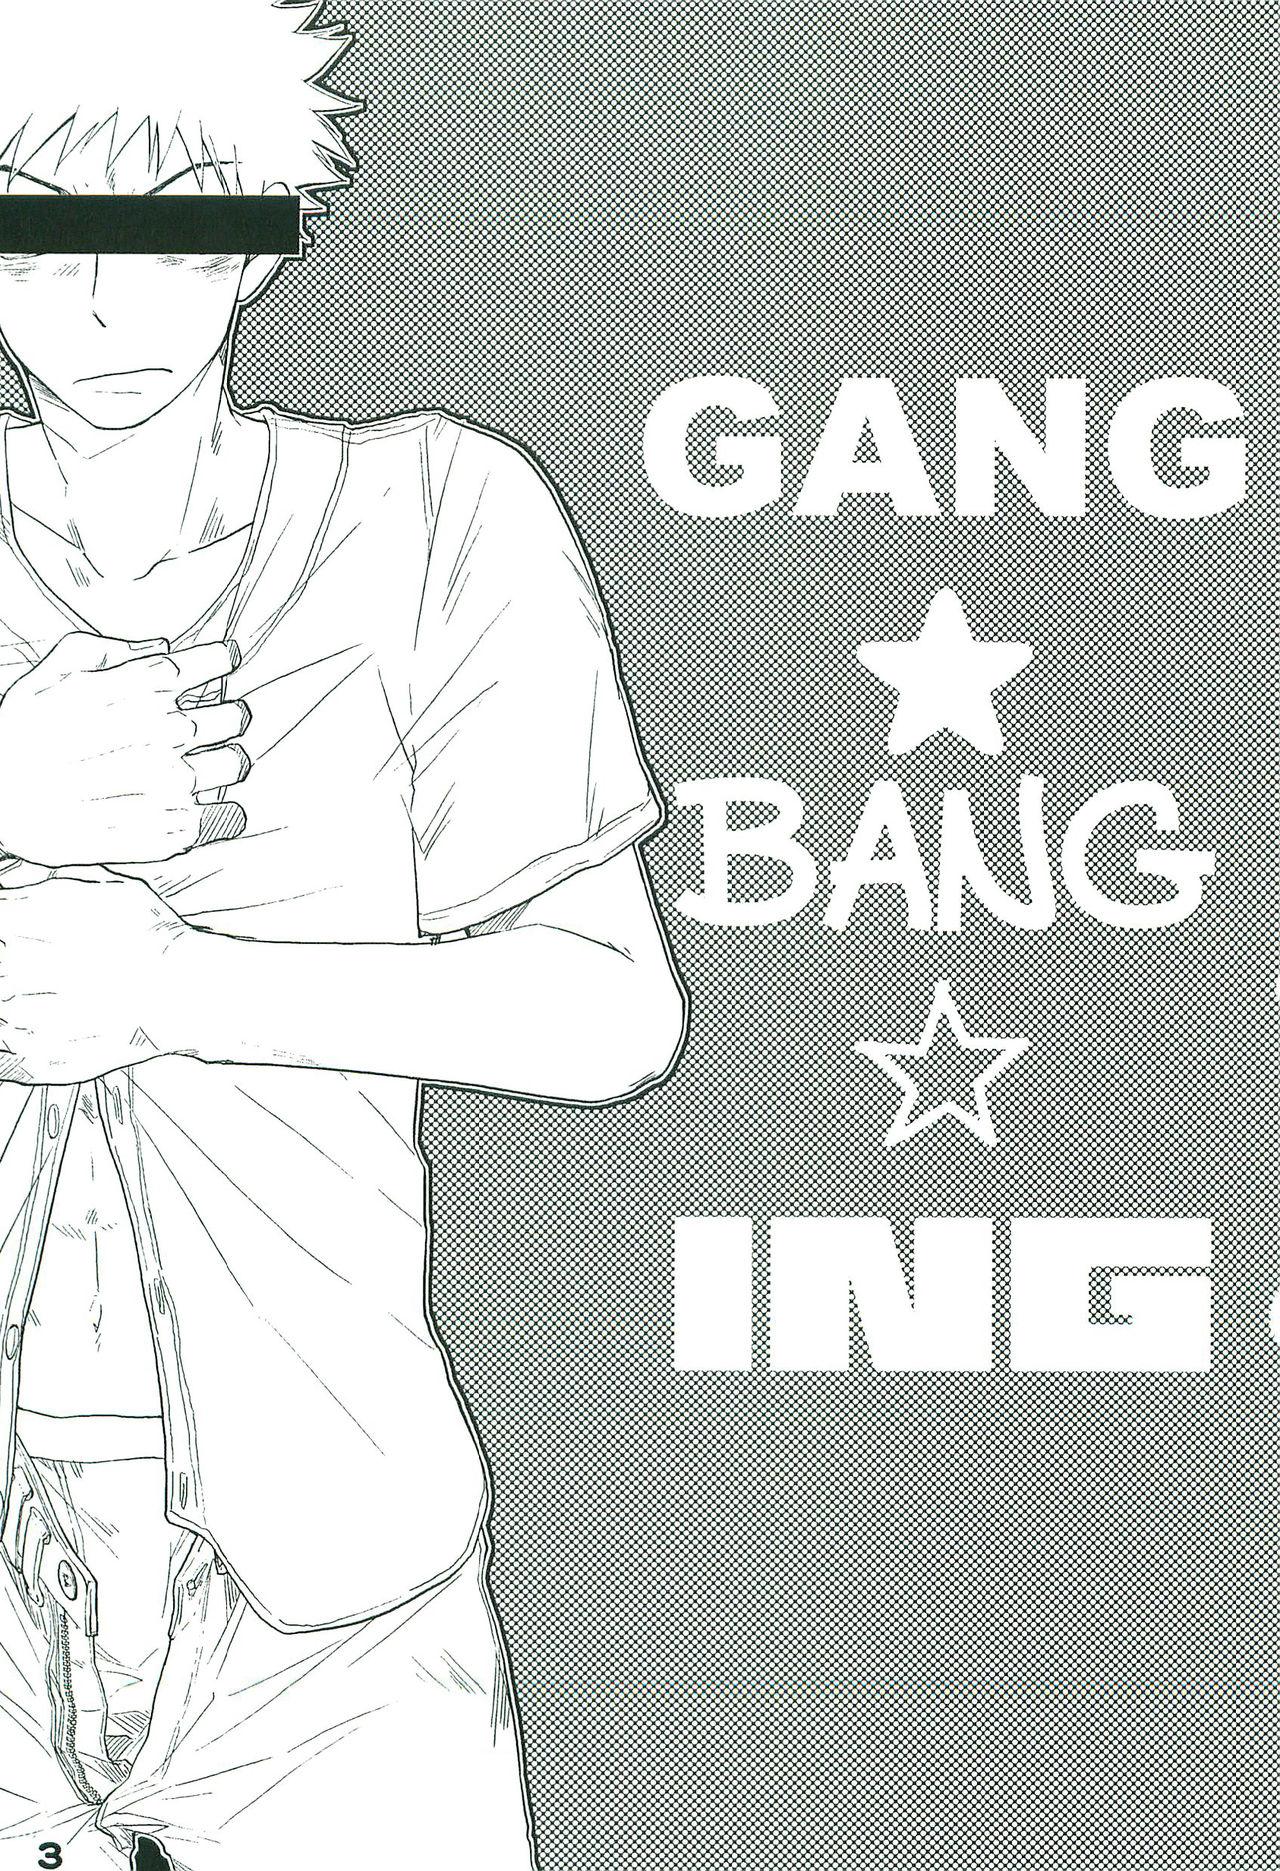 GANG BANG ING 1